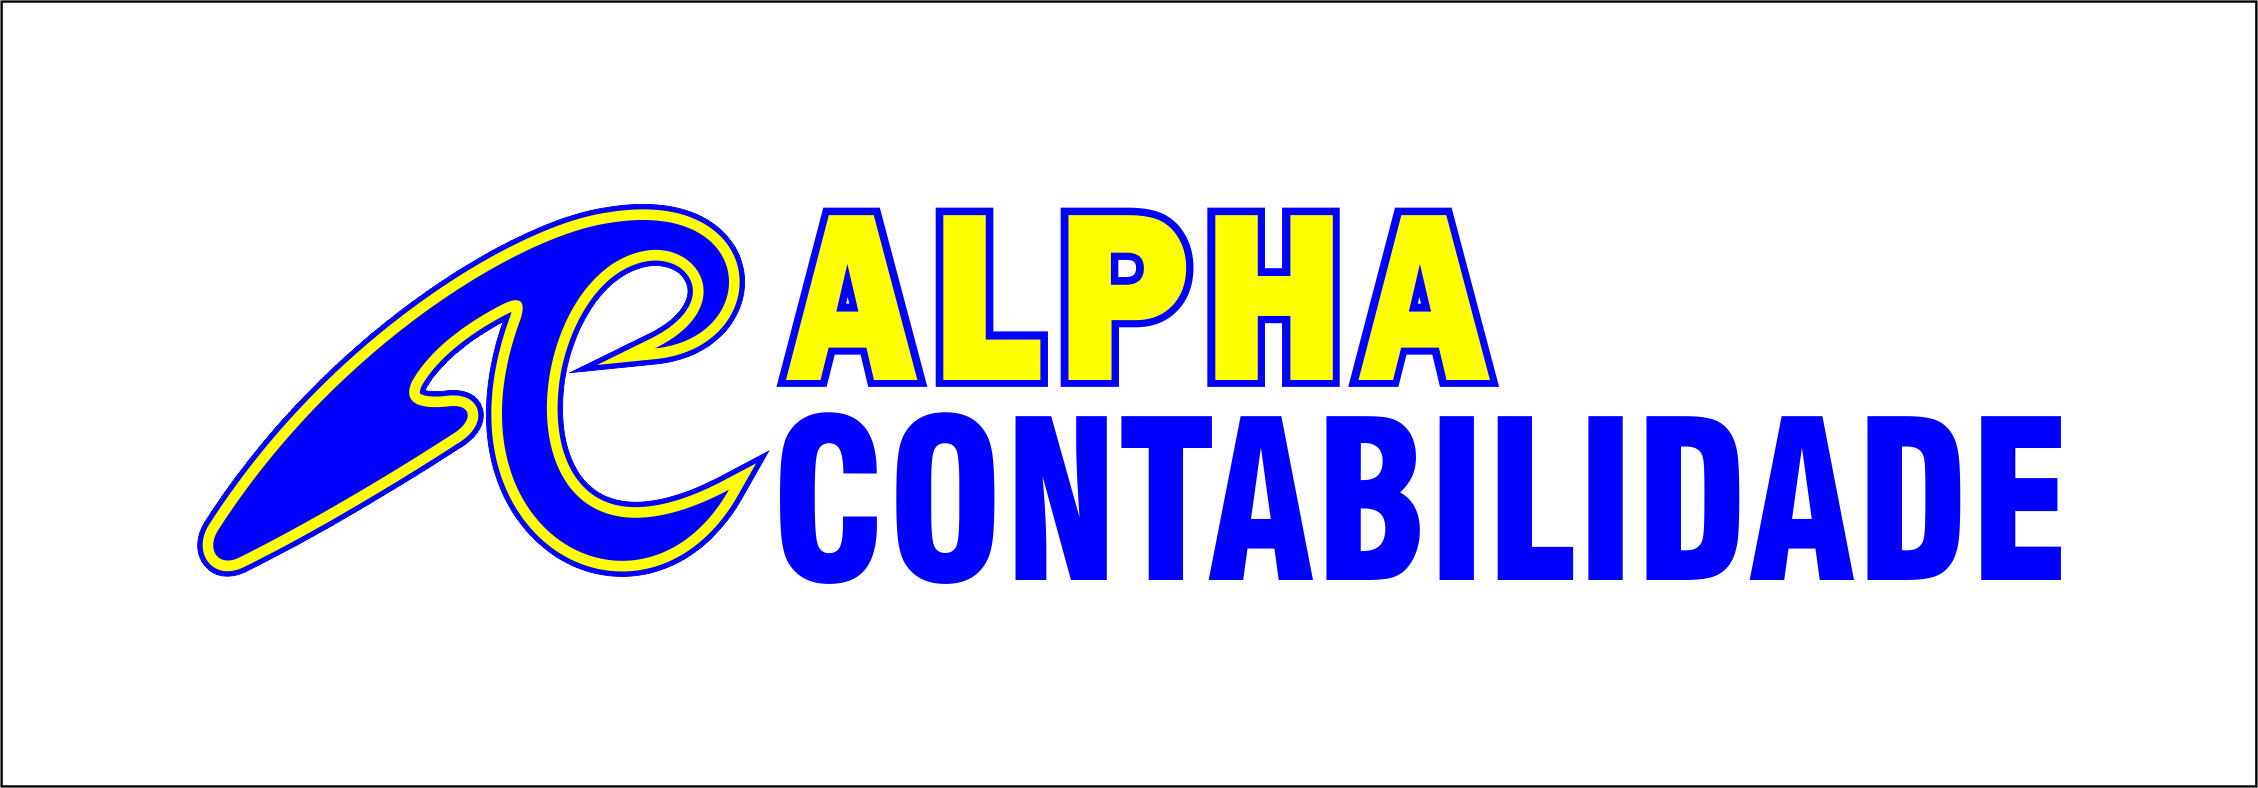 Contabilidade - Alpha Contabilidade - Porto Velho